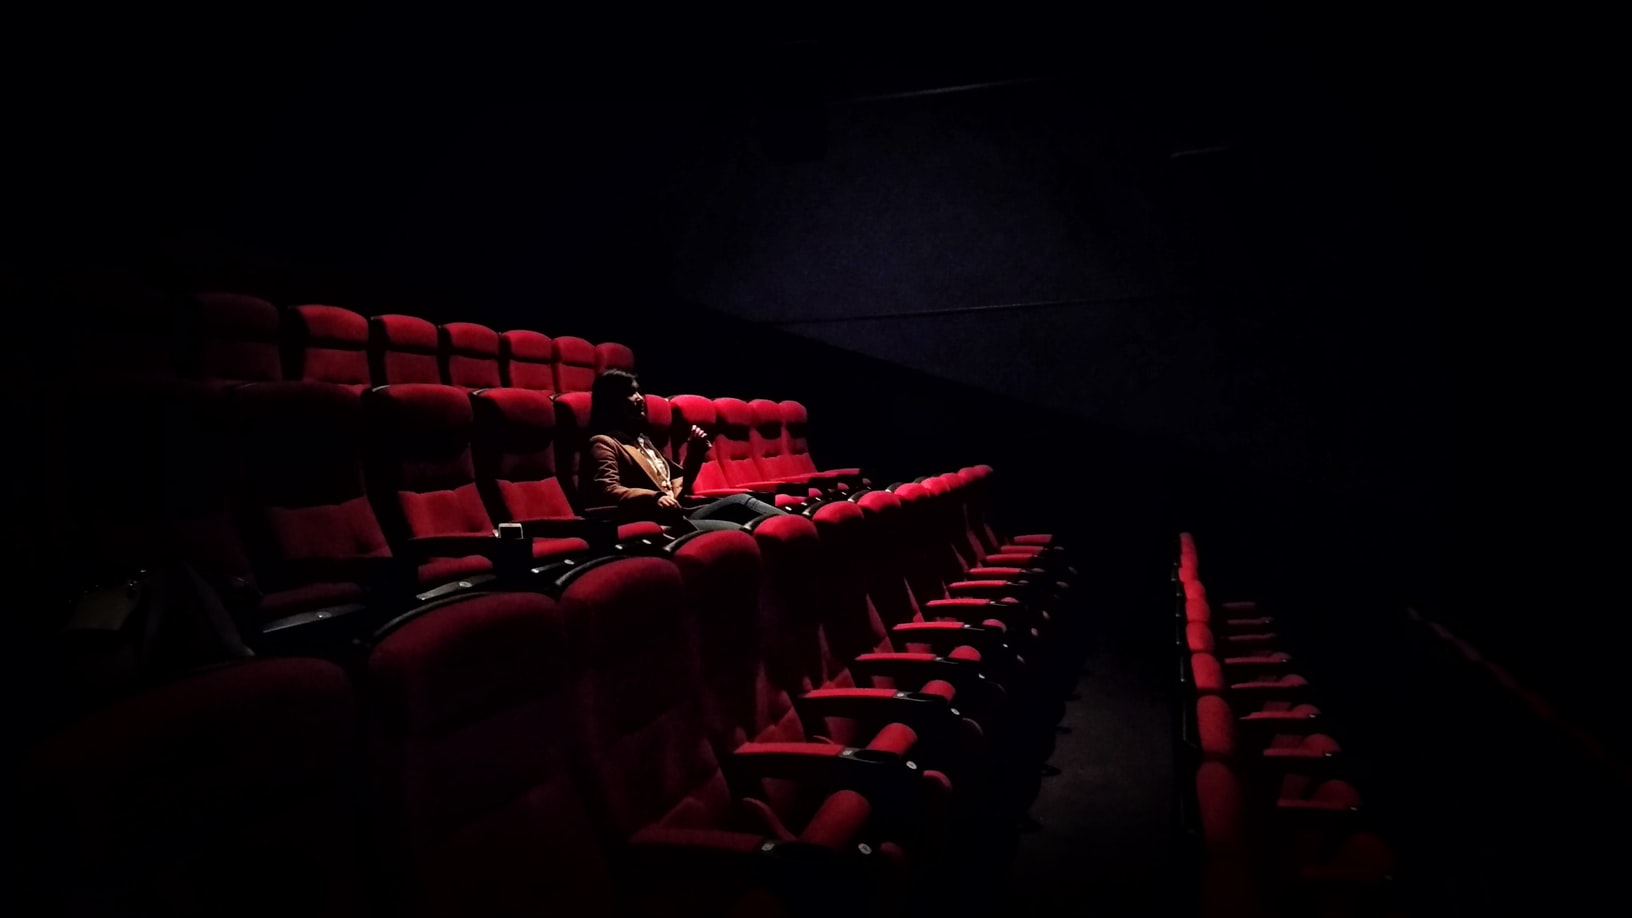 A spectator in the cinema